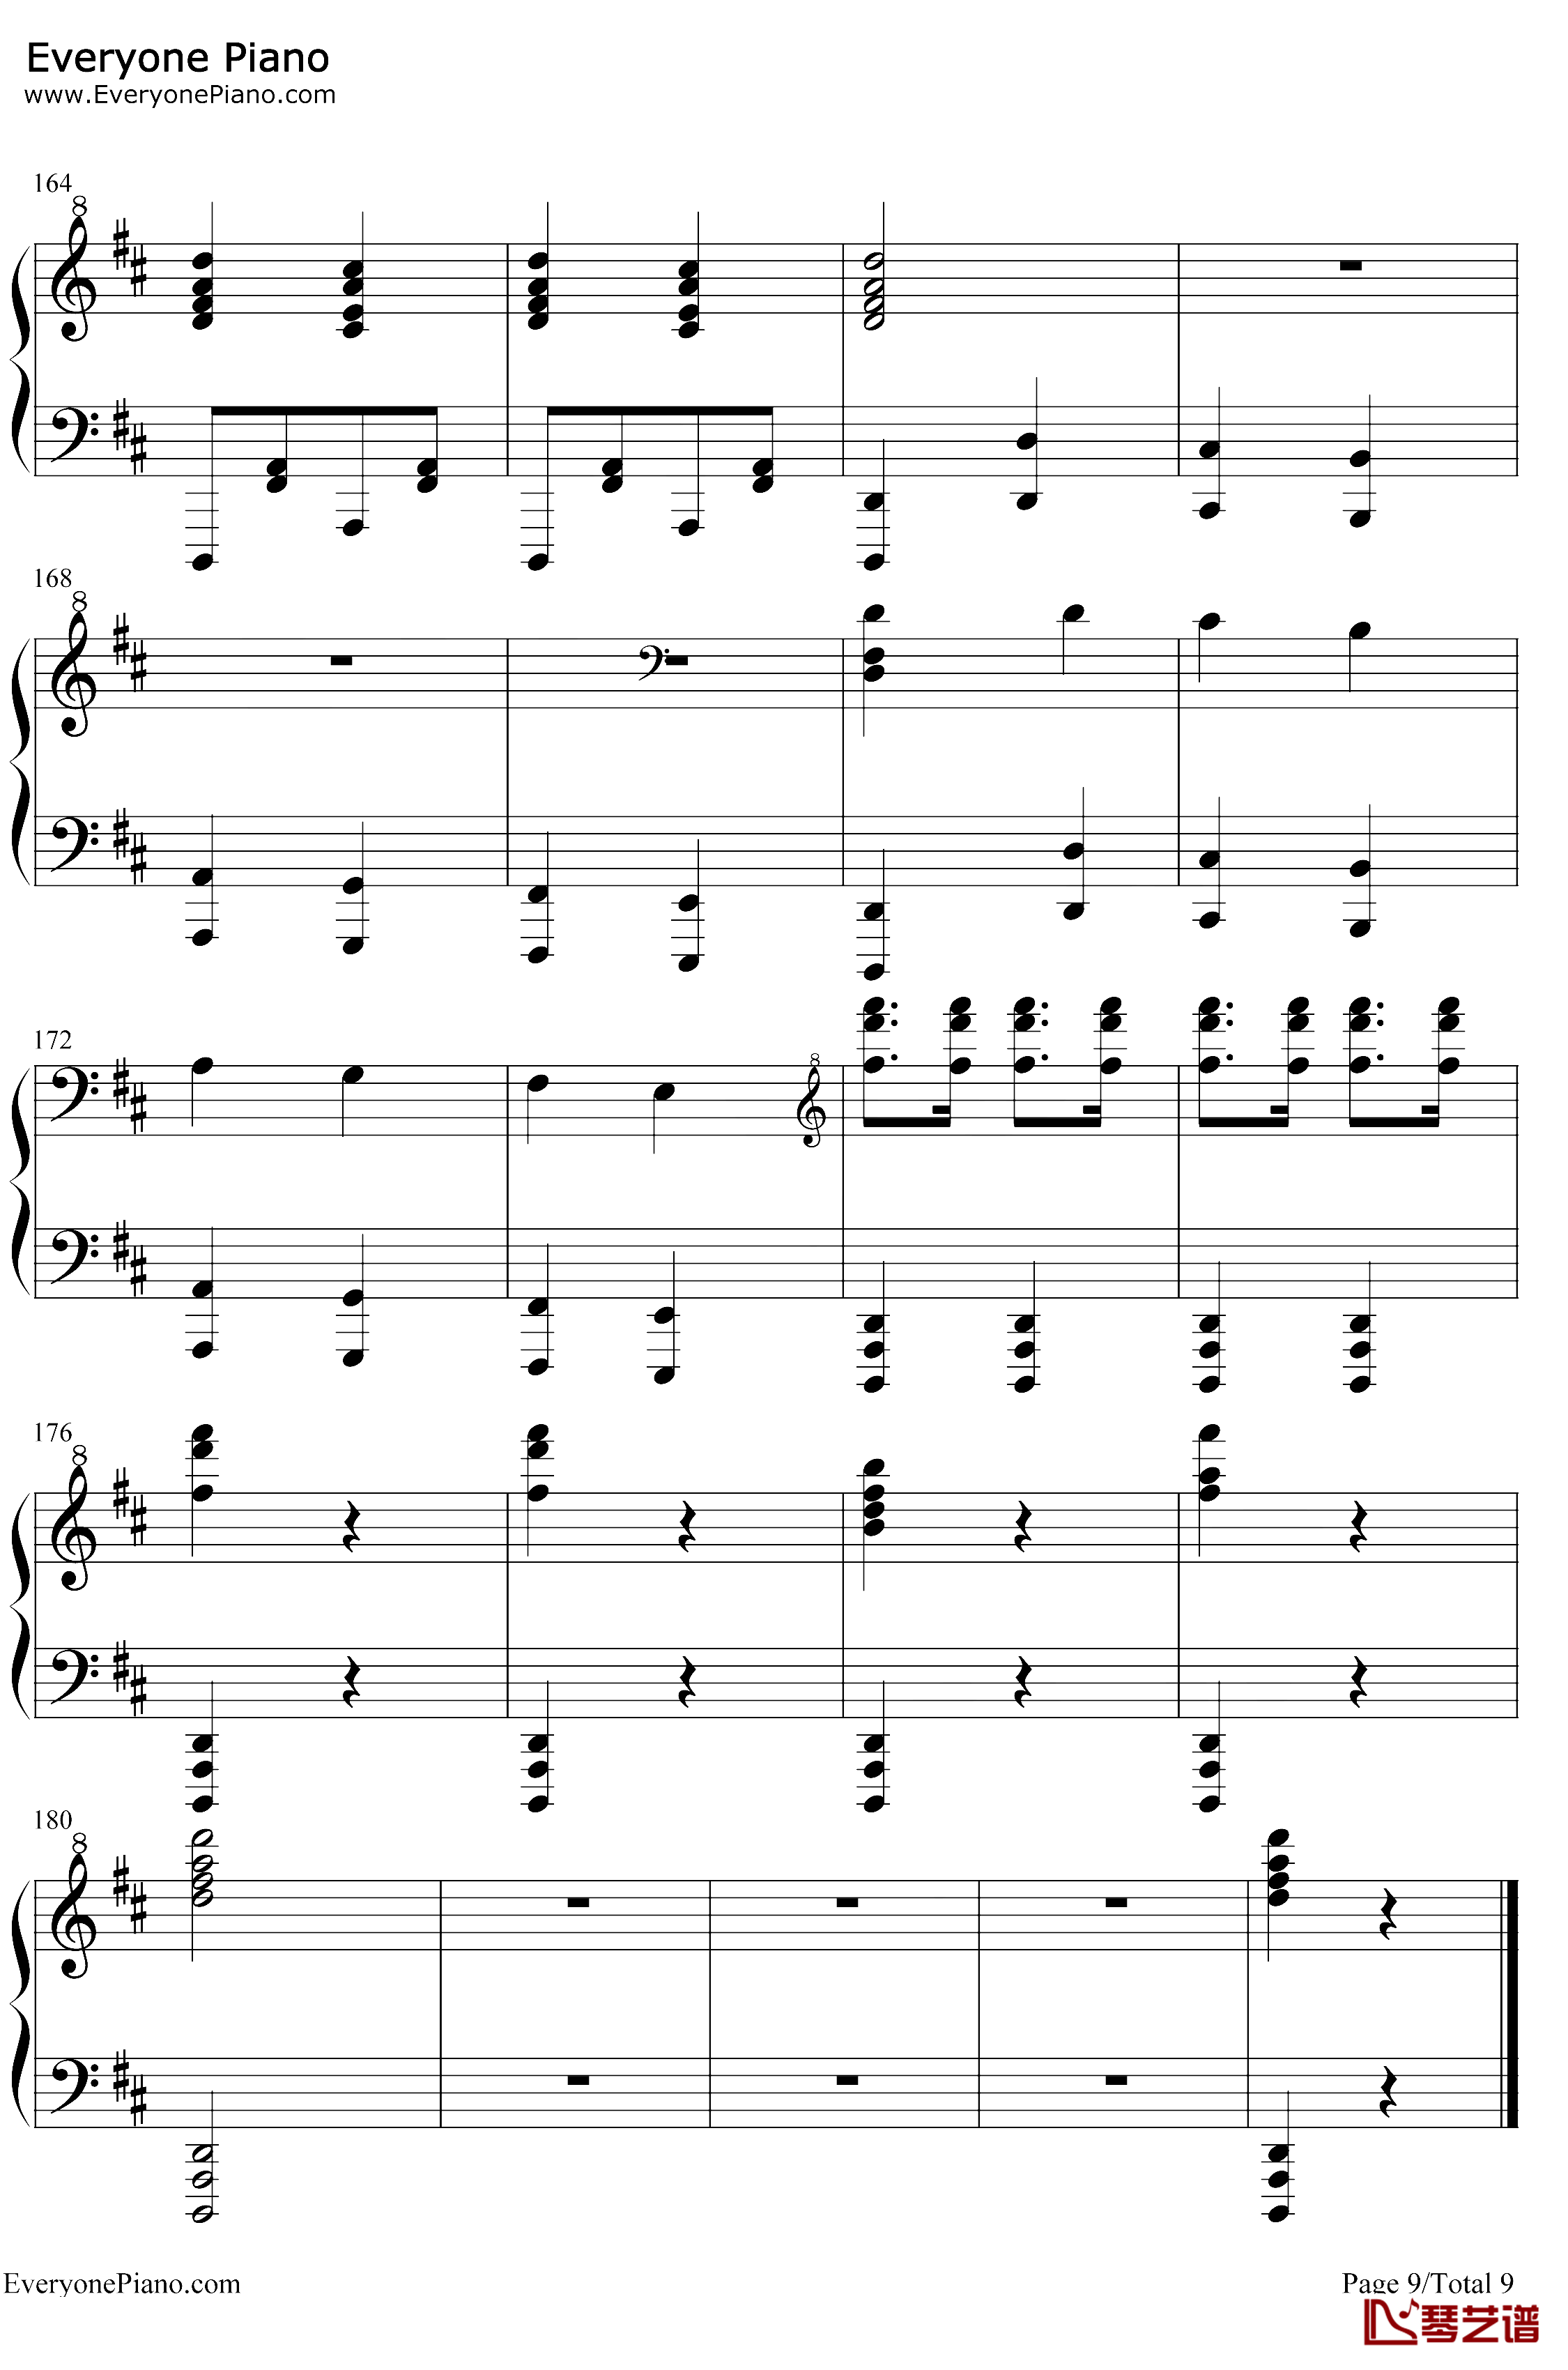 康康舞曲钢琴谱-雅克·奥芬巴赫-触手猴版-天堂与地狱序曲-地狱中的奥菲欧序曲9